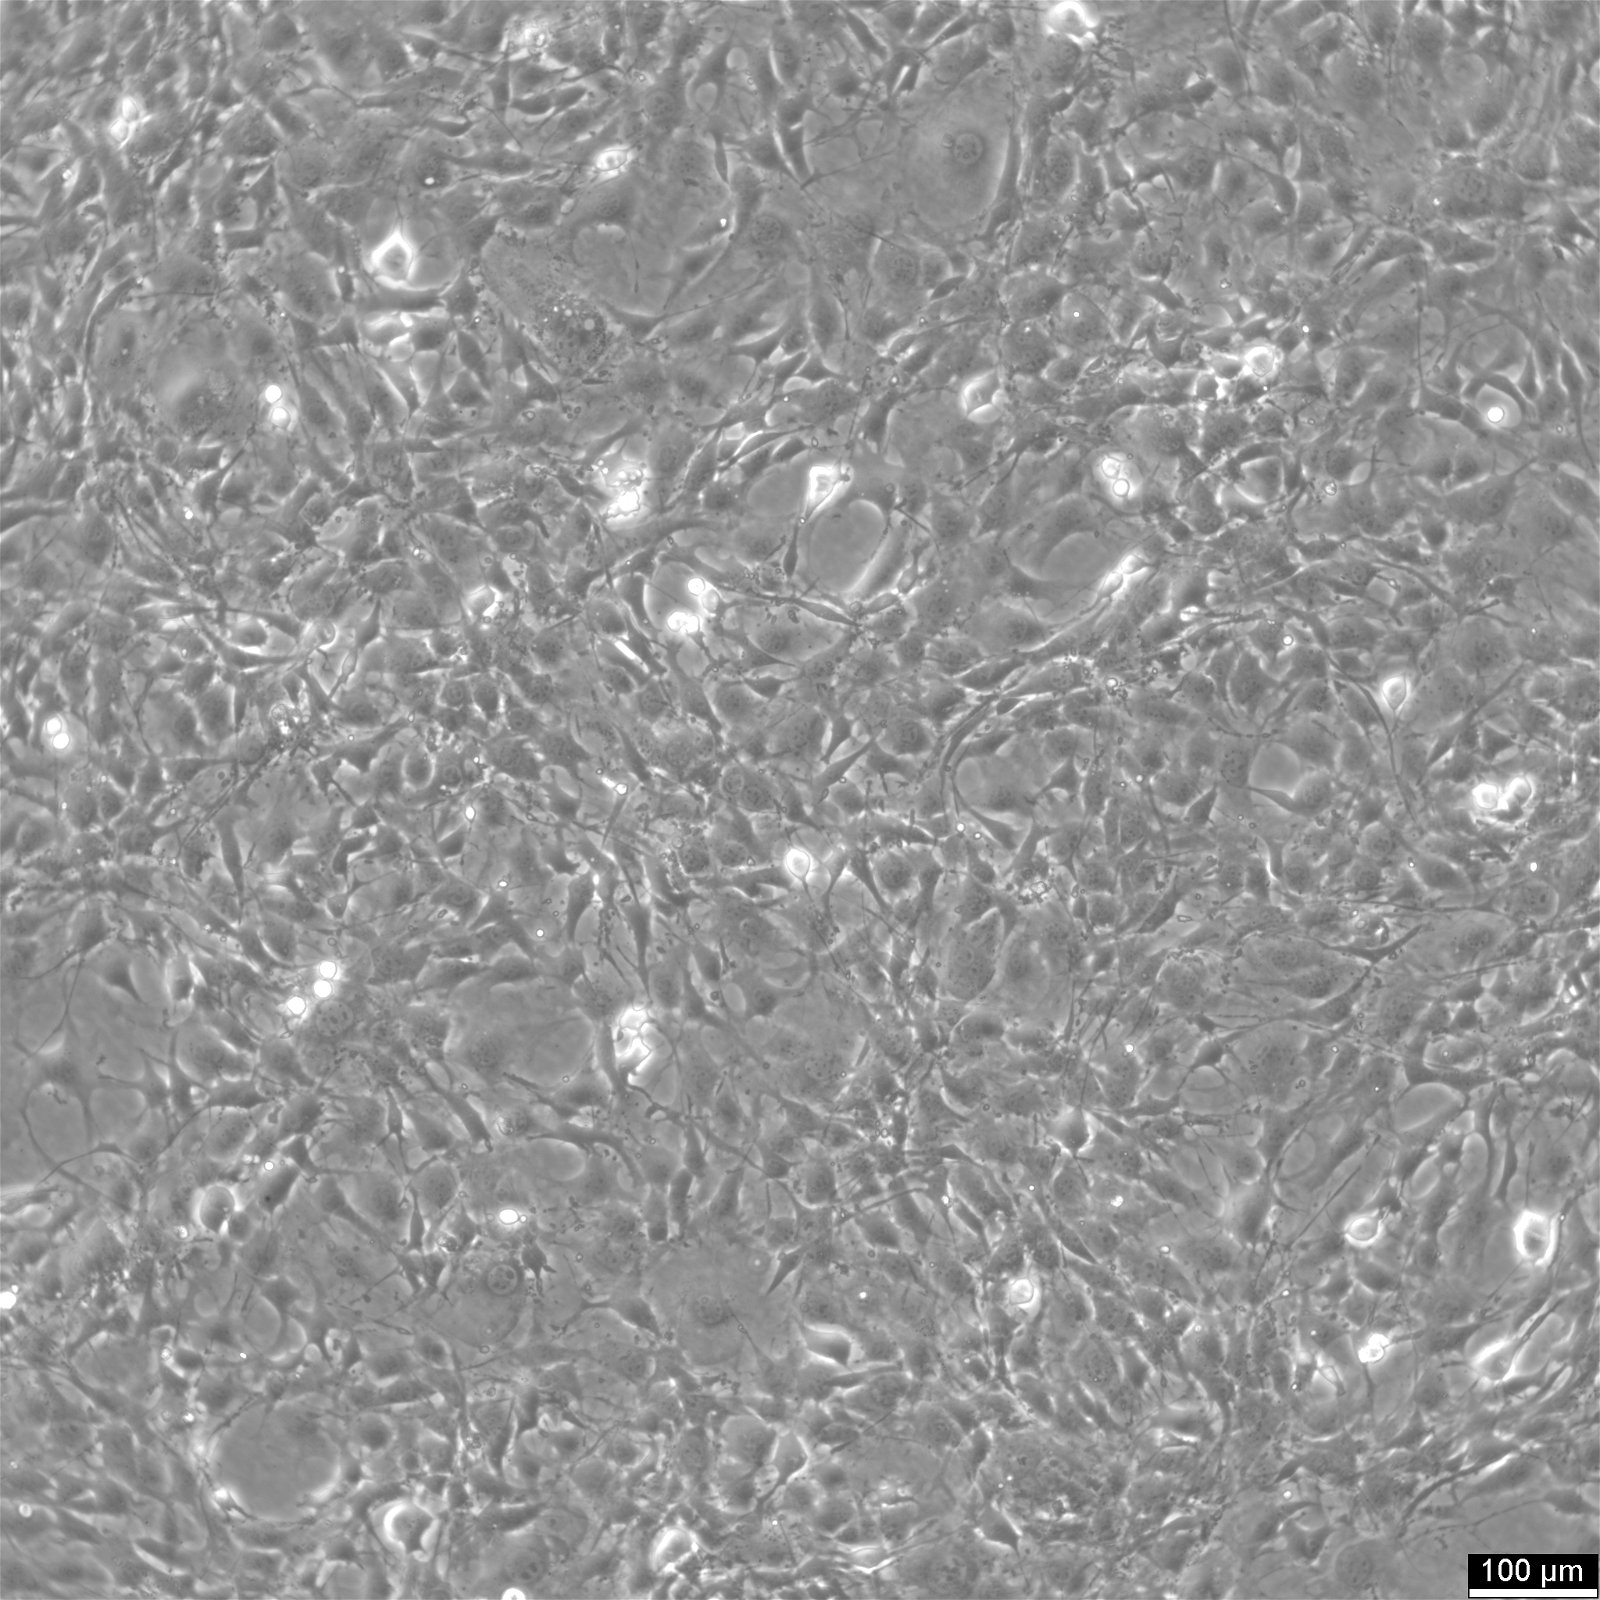 C3H/10T1/2-Zellen